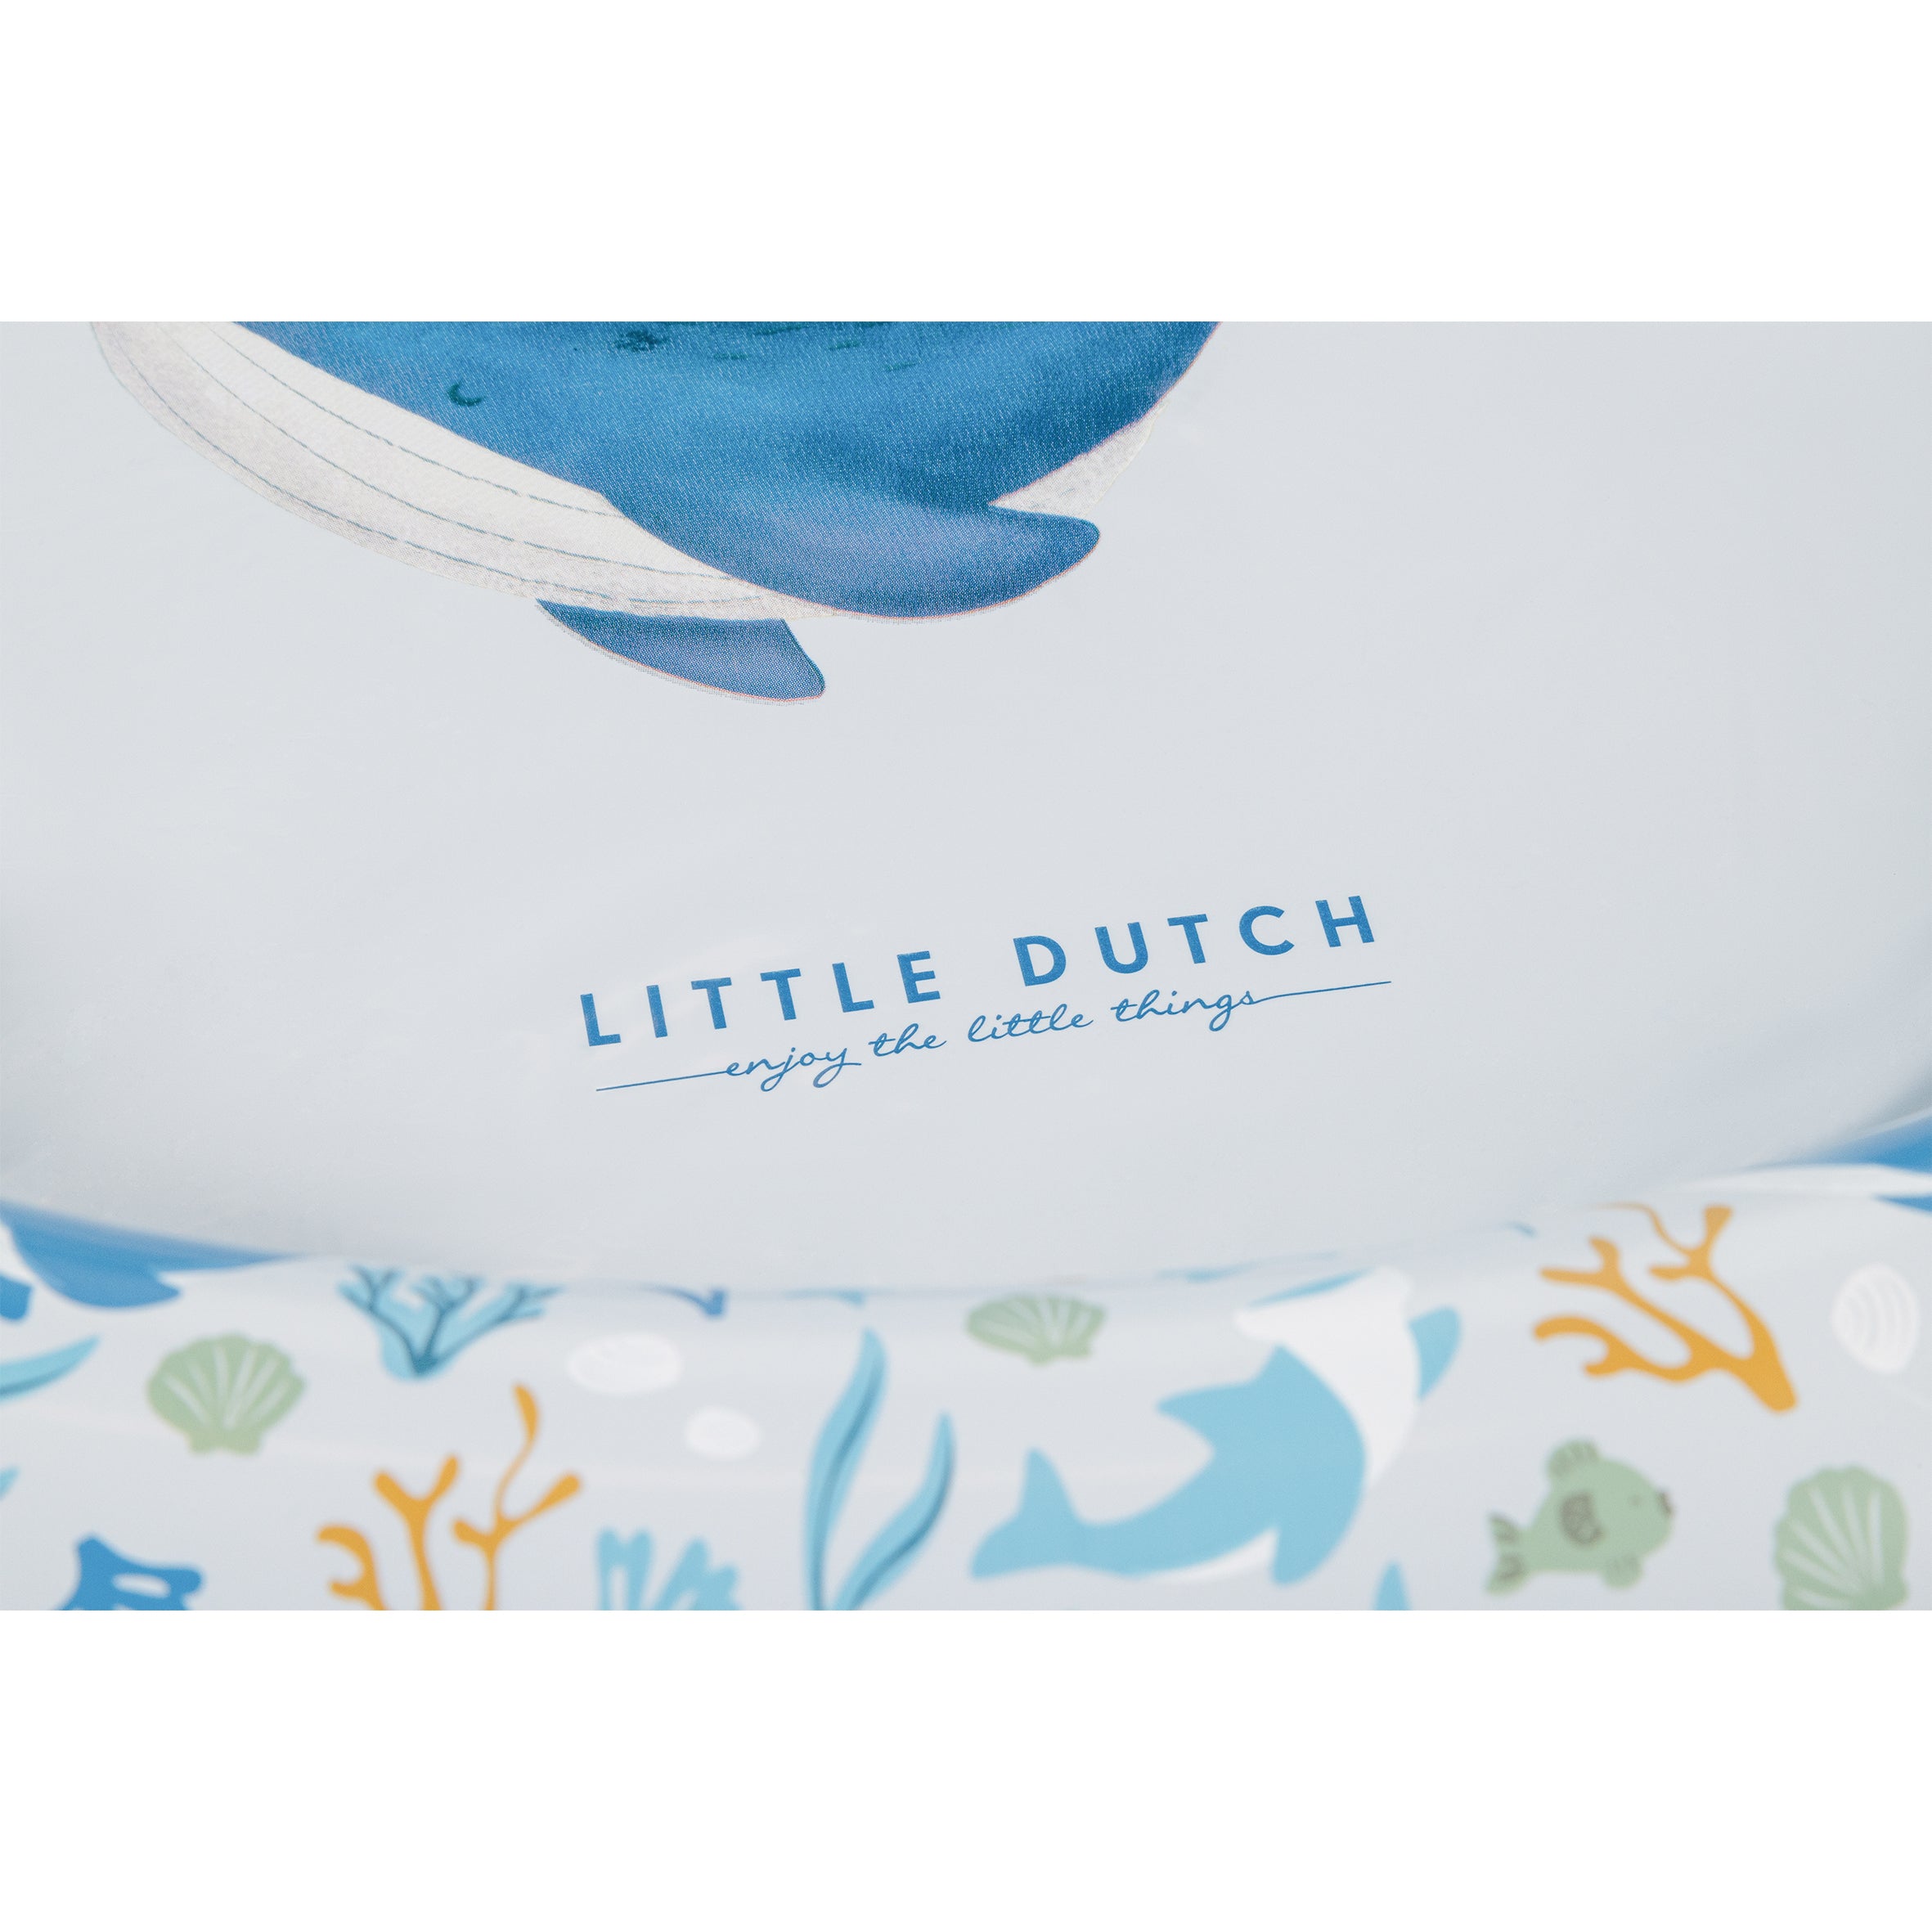 Little-Dutch-aufblasbares-Schwimmbecken-Swimmingpool-Ocean-dreams-blue